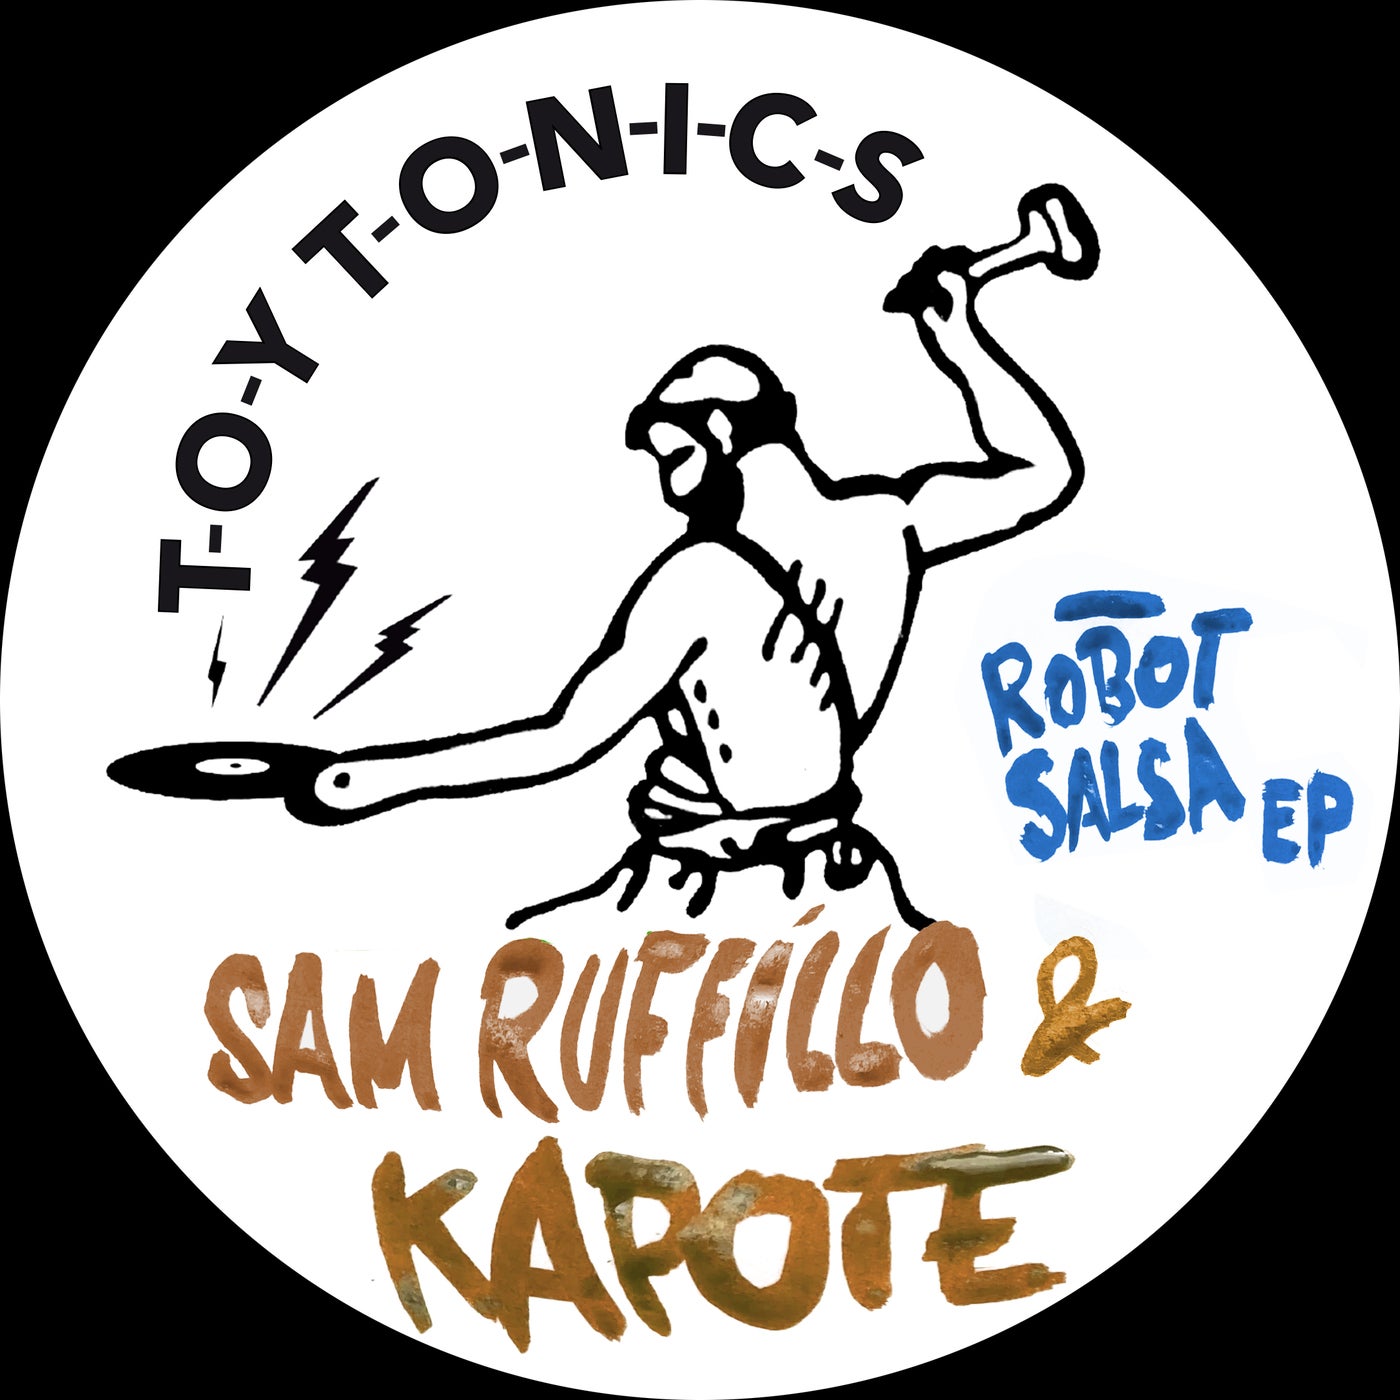 Kapote & Sam Ruffillo - La La Tune on Toy Tonics